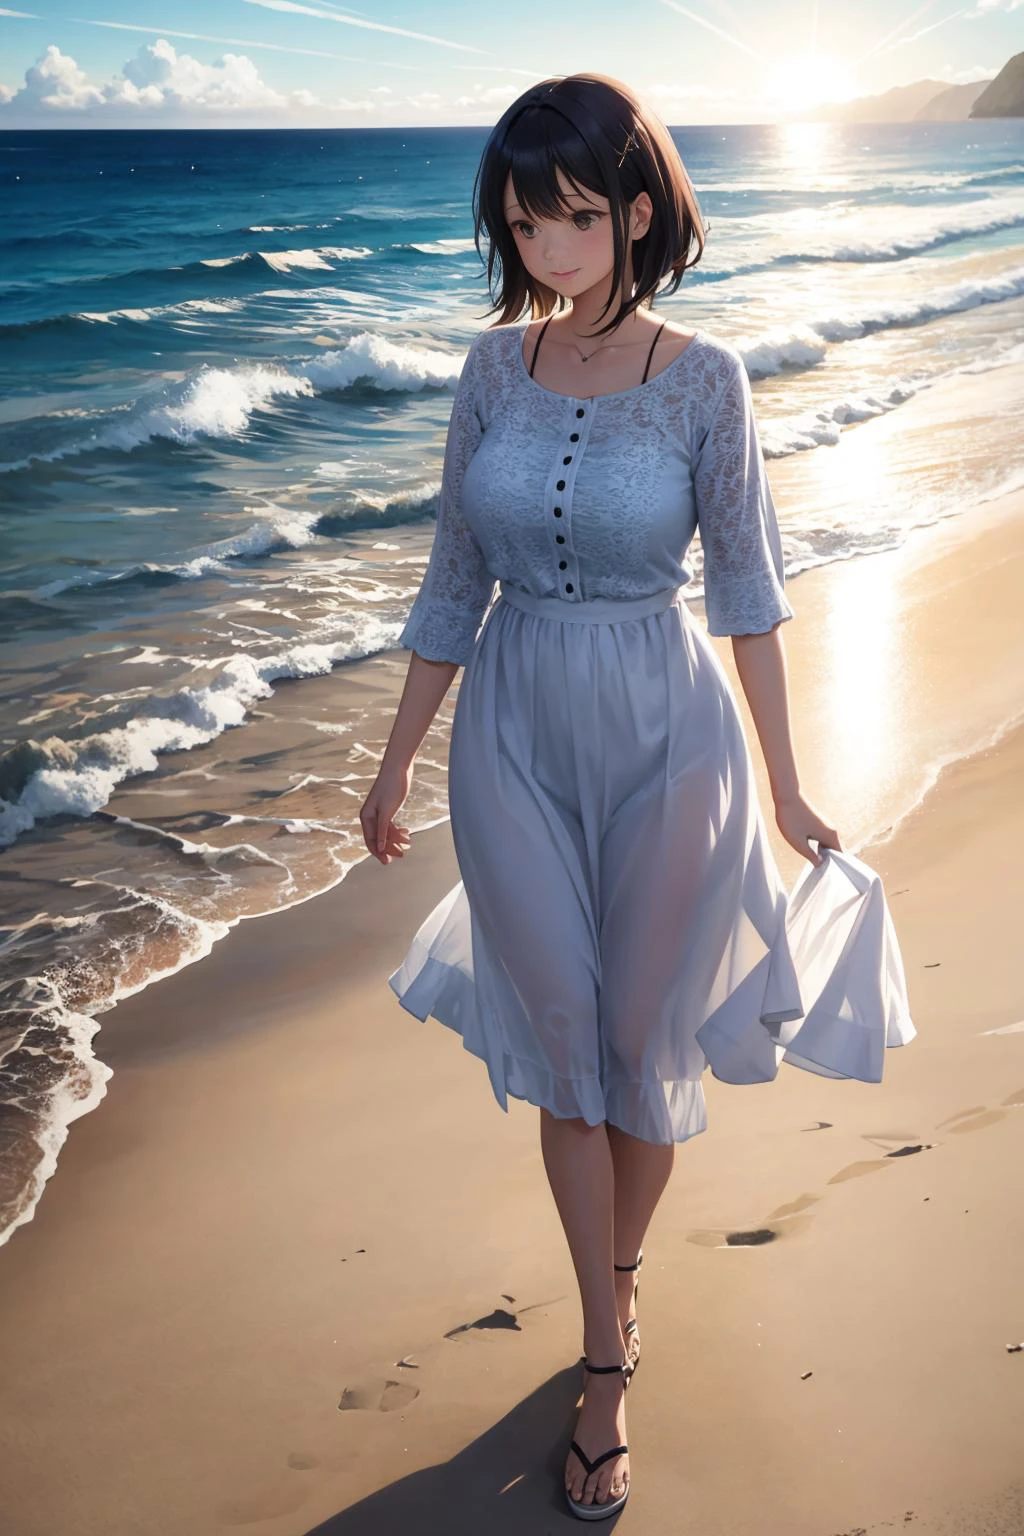 mulher curtindo um passeio na praia. 35 anos. luz solar refletida no oceano. luz volumétrica. reflexão, refração.